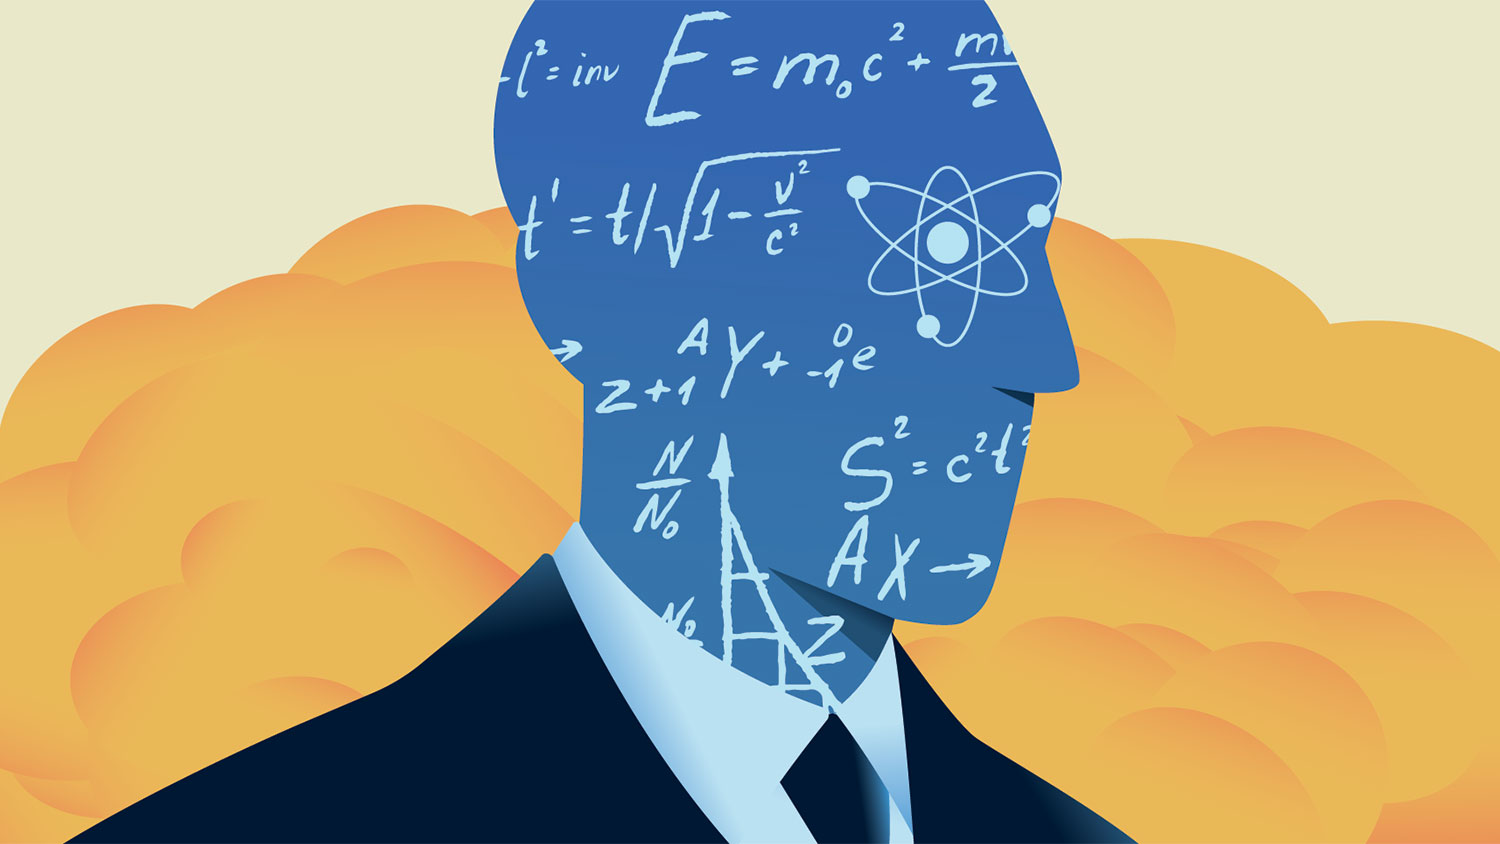 Robert Oppenheimer silhouette graphic